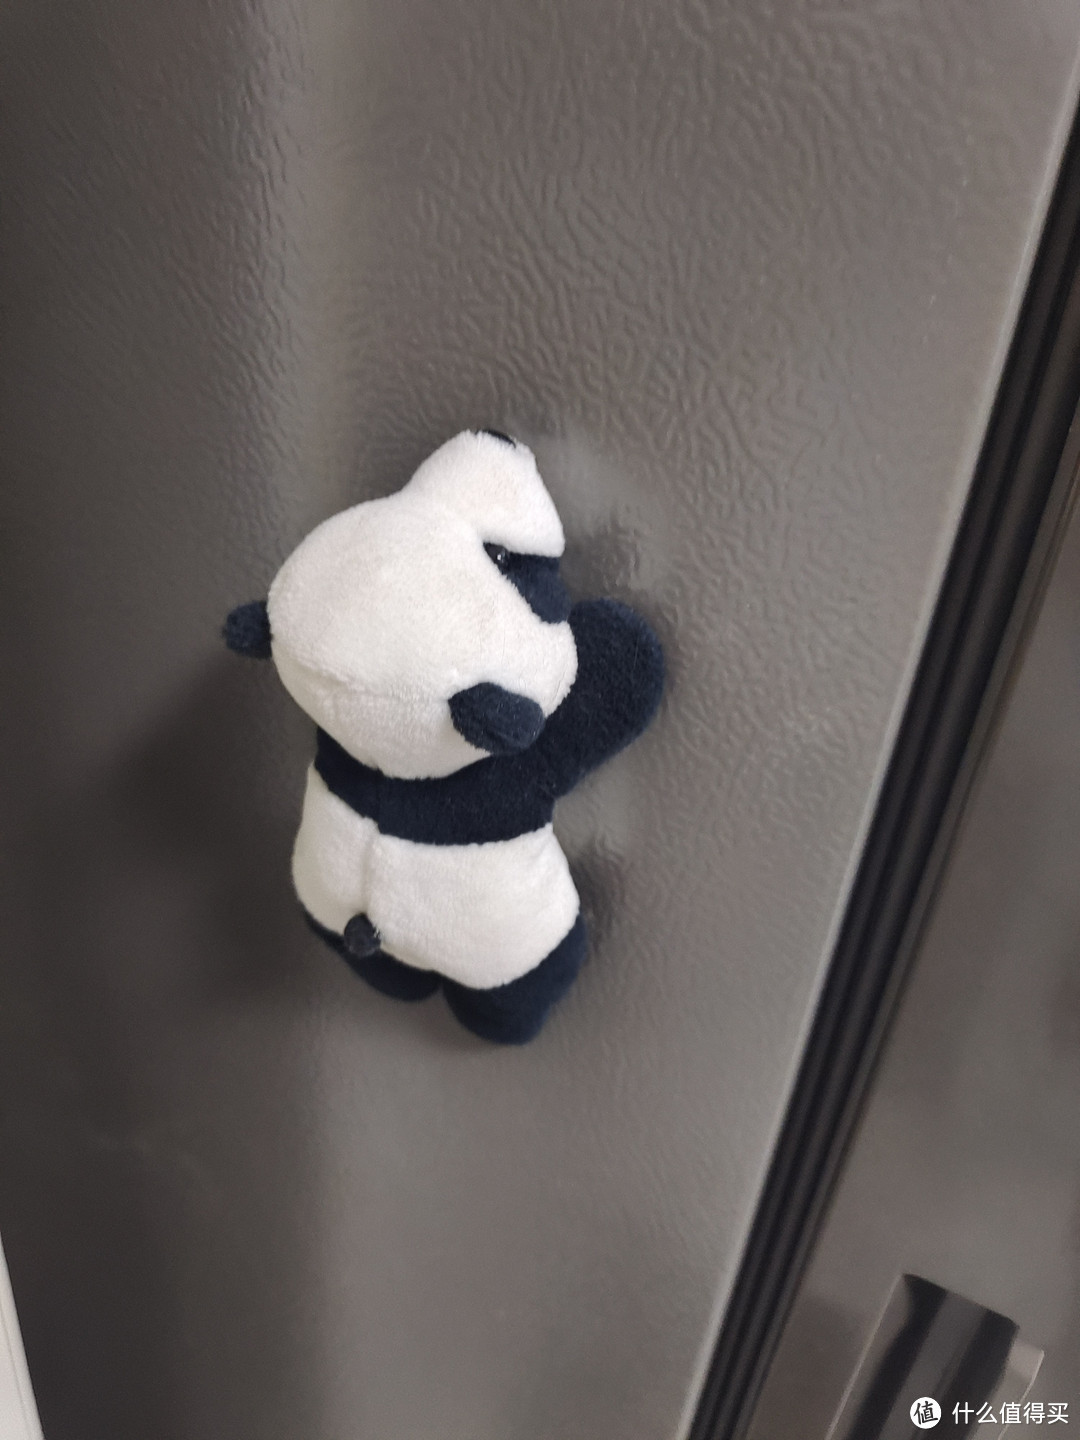 可可爱爱的冰箱小熊猫｜我把四川特产带回家啦！